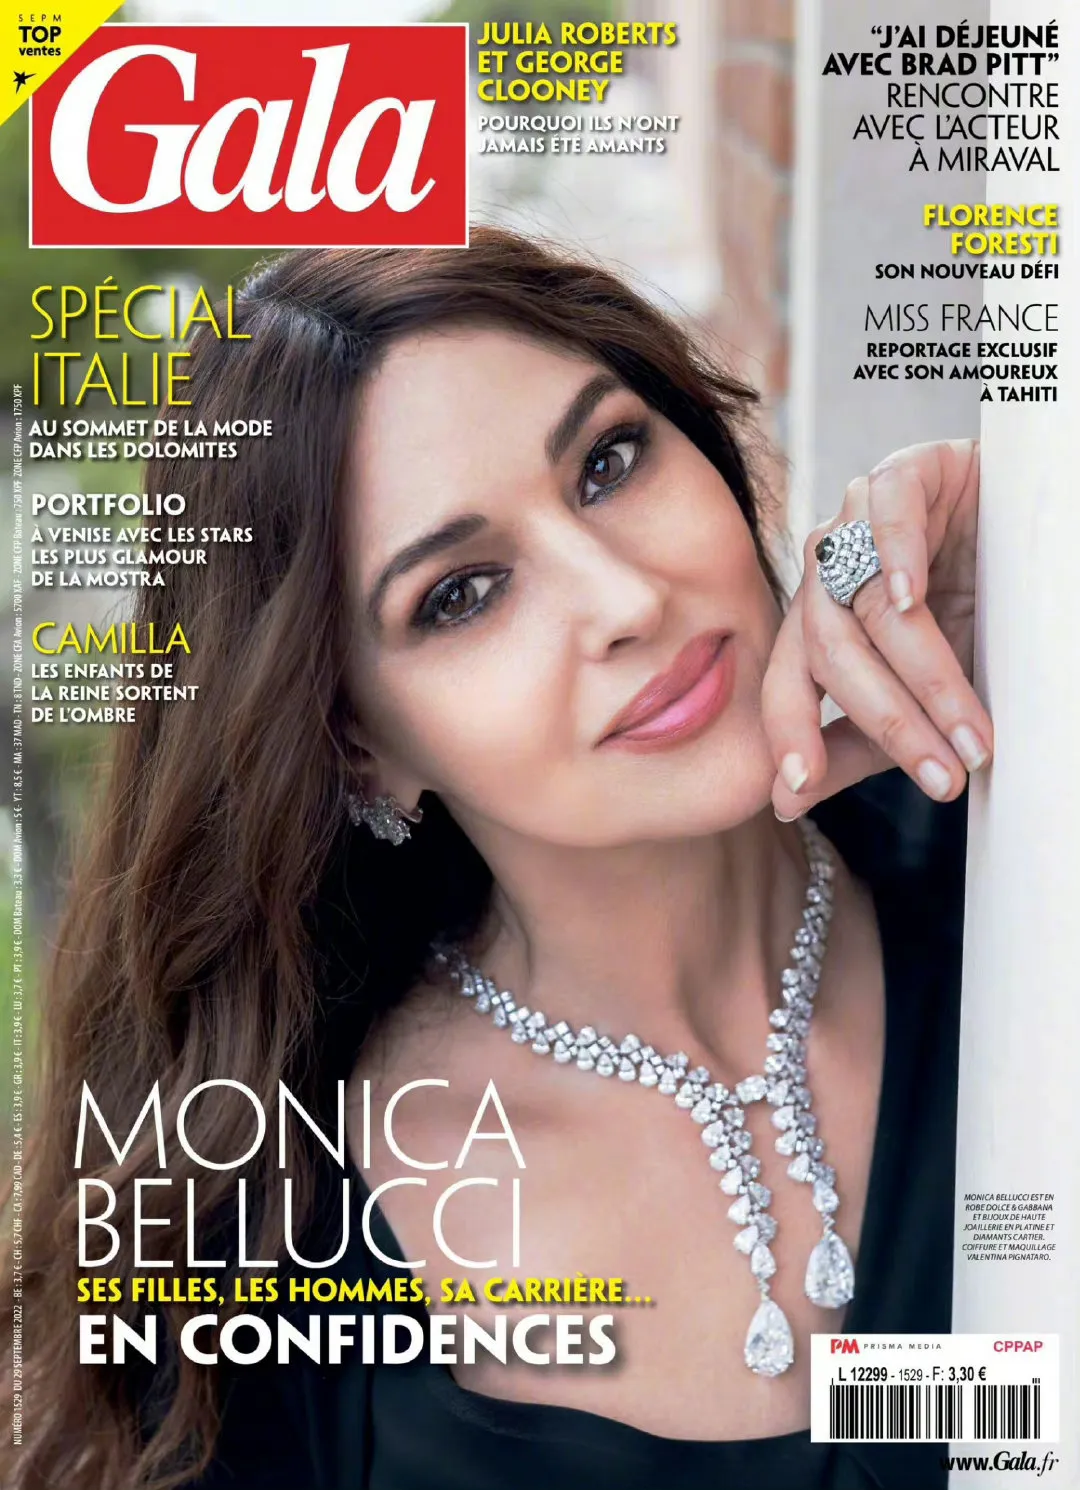 Monica Bellucci, 'Gala' magazine photo | FMV6